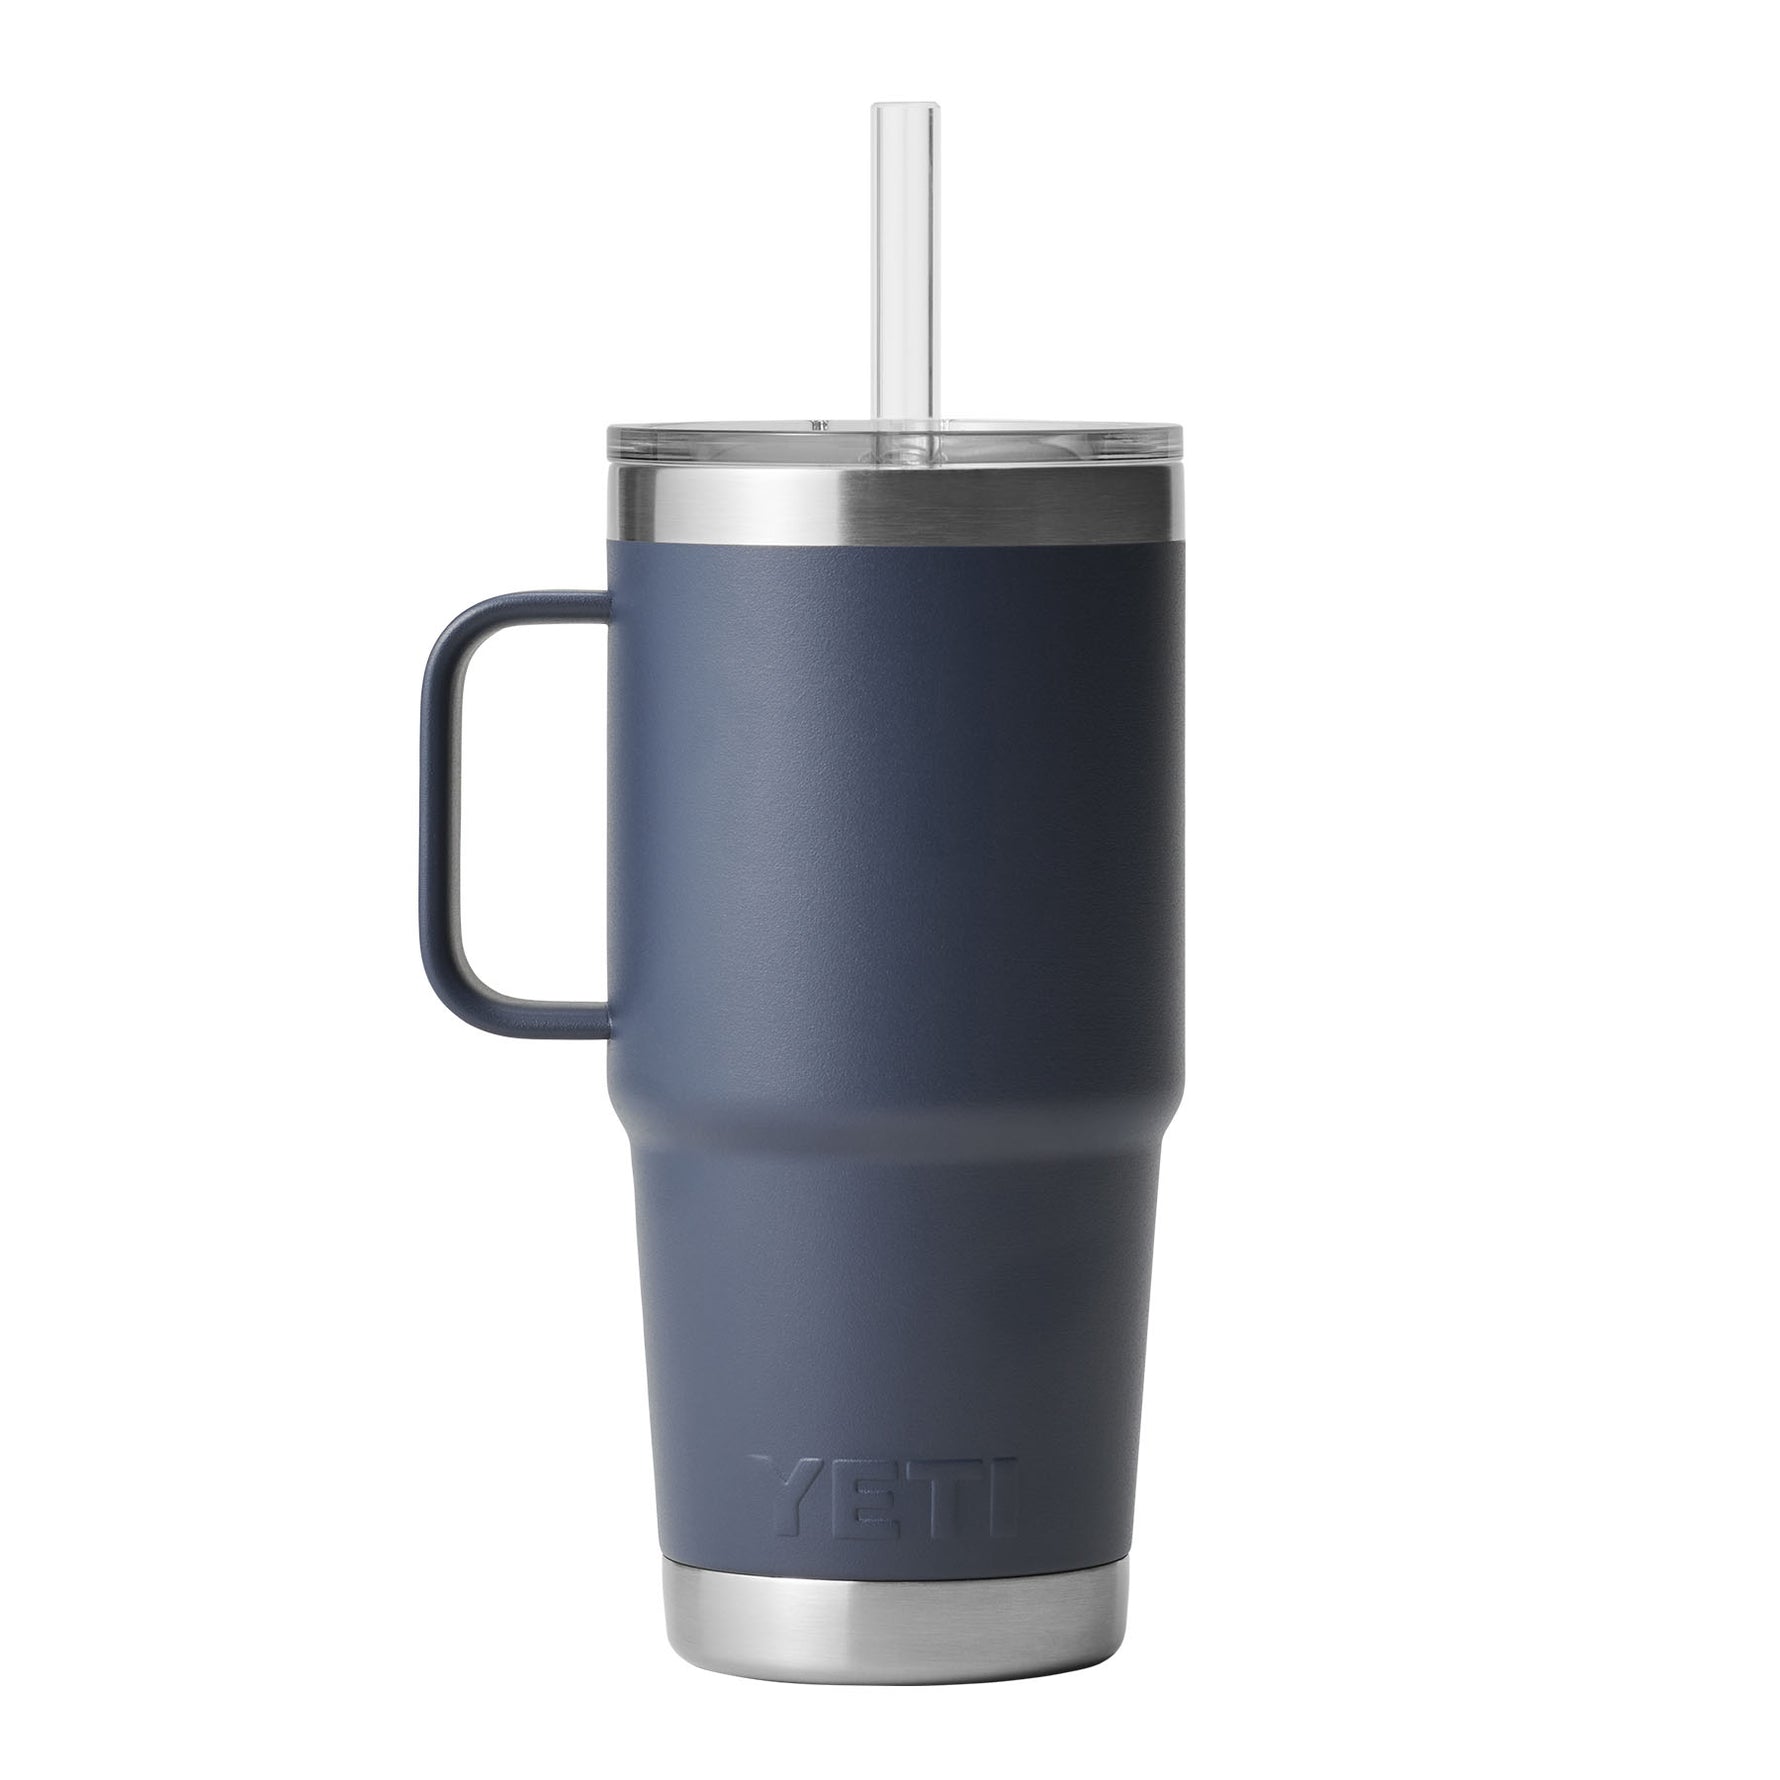 YETI Yeti Rambler 25 Oz Mug with Straw Lid 